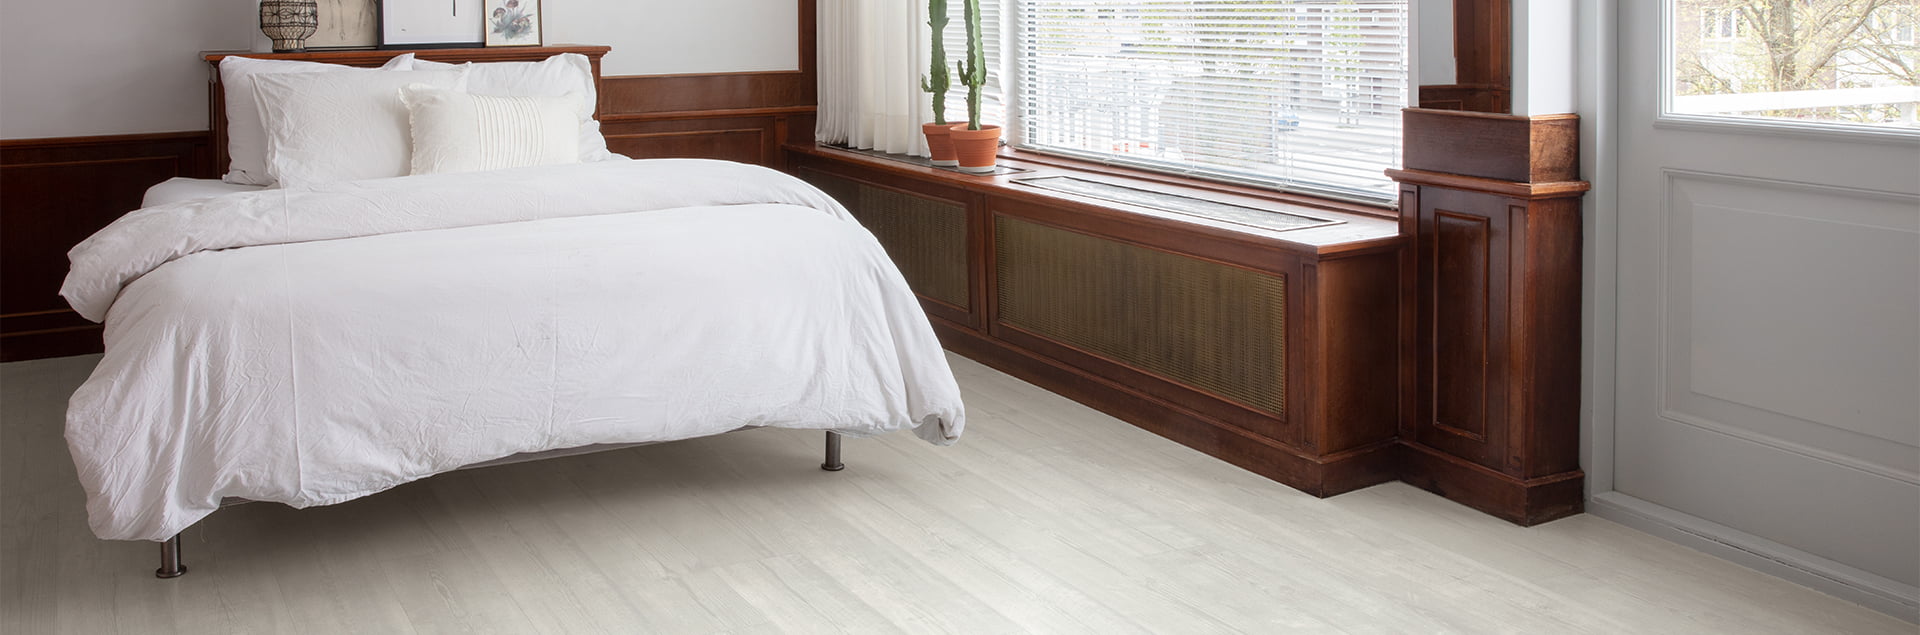 biela vinylová podlaha v spálni od spoločnosti Quick-Step